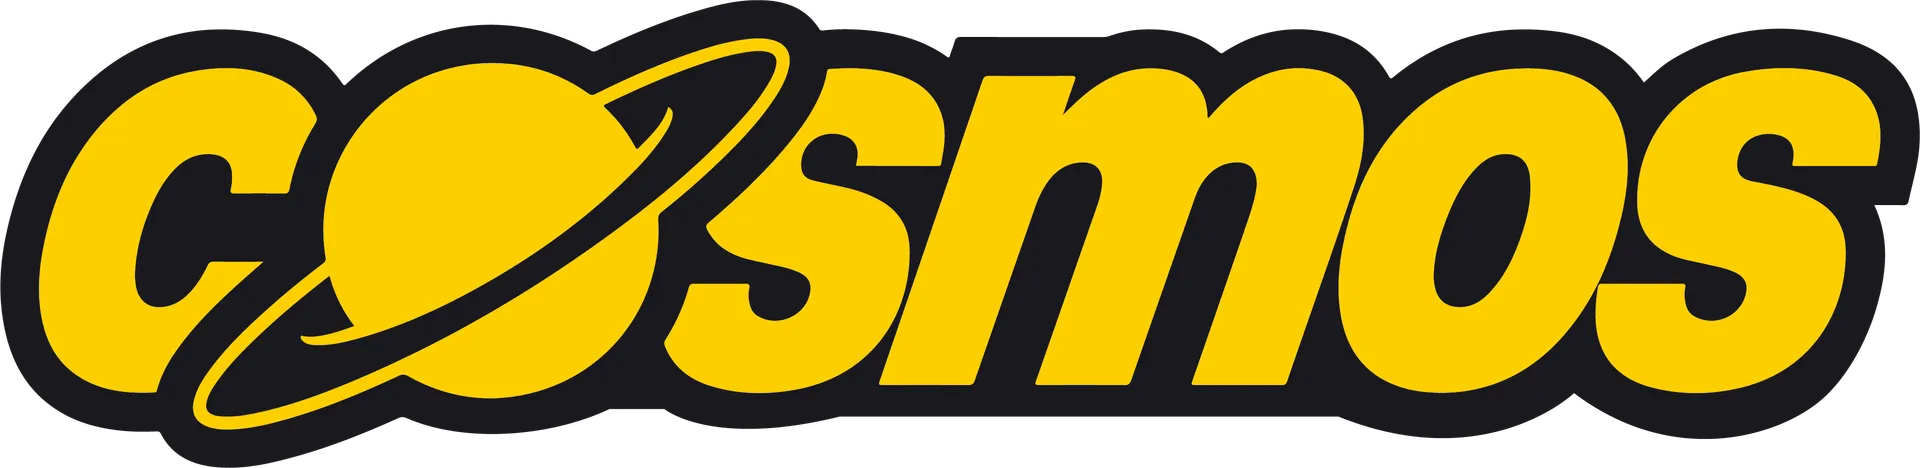 COSMOS logo die aktuell Flugblatt